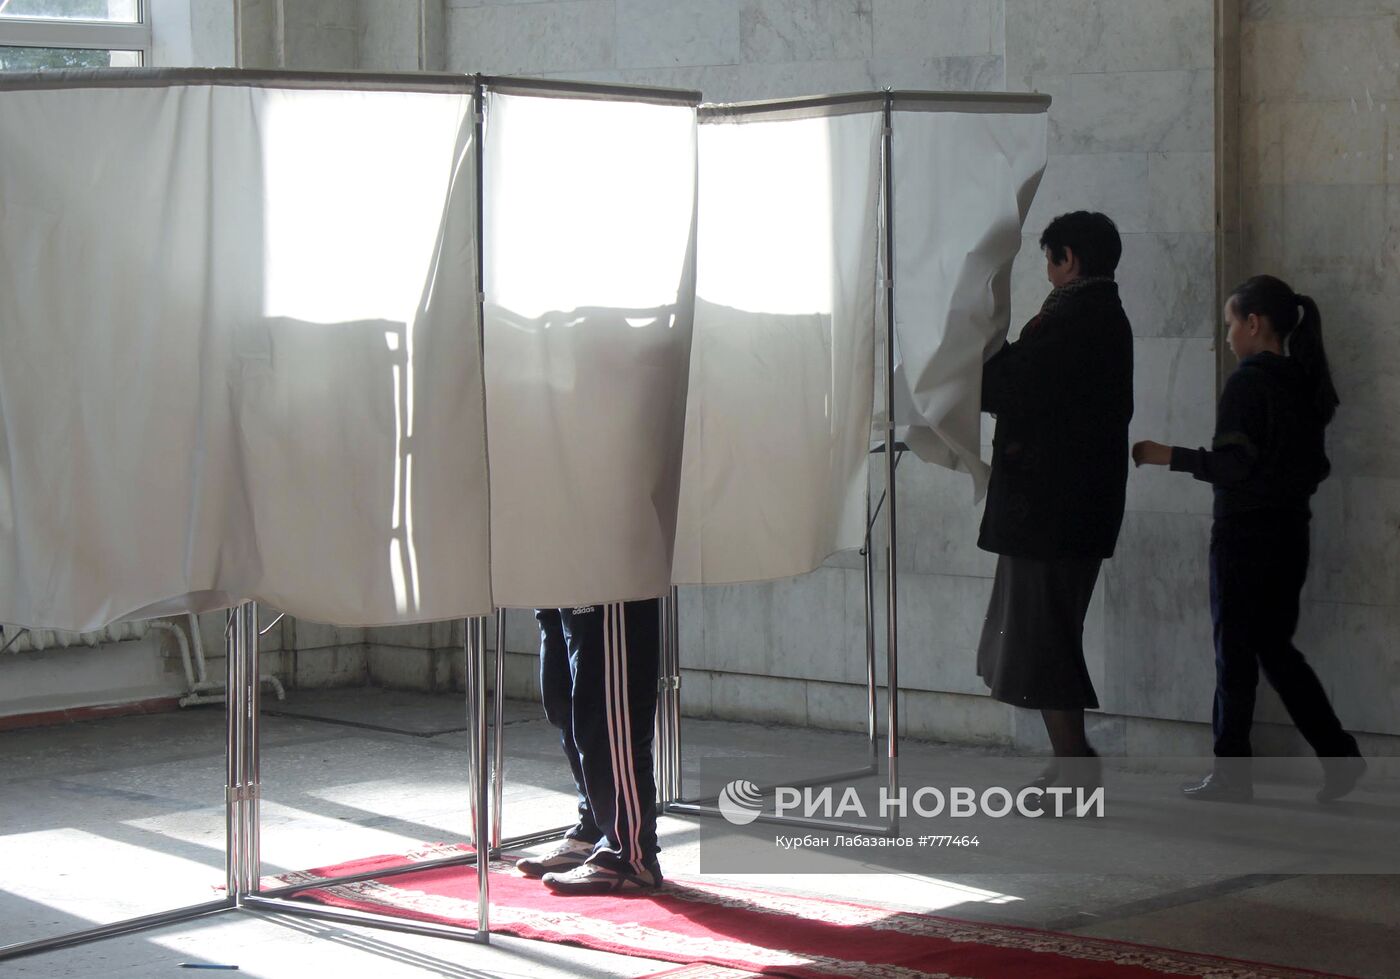 Выборы мэра города Махачкала в республике Дагестан